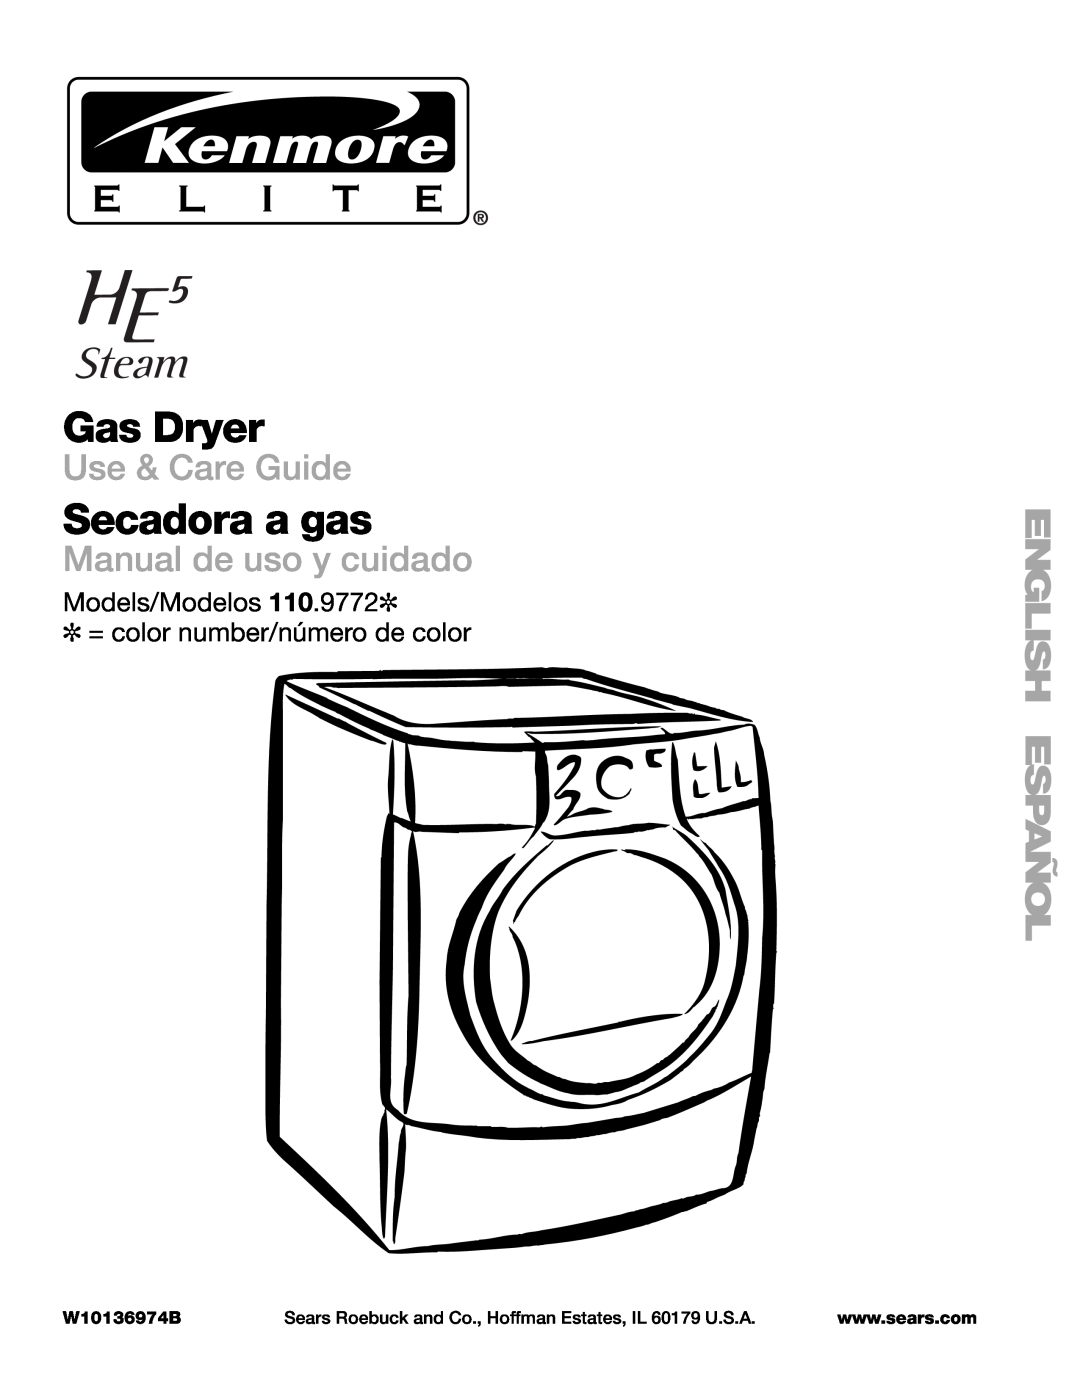 Suunto 110.9772 manual Gas Dryer, Secadora a gas, Use & Care Guide, Manual de uso y cuidado, W10136974B 